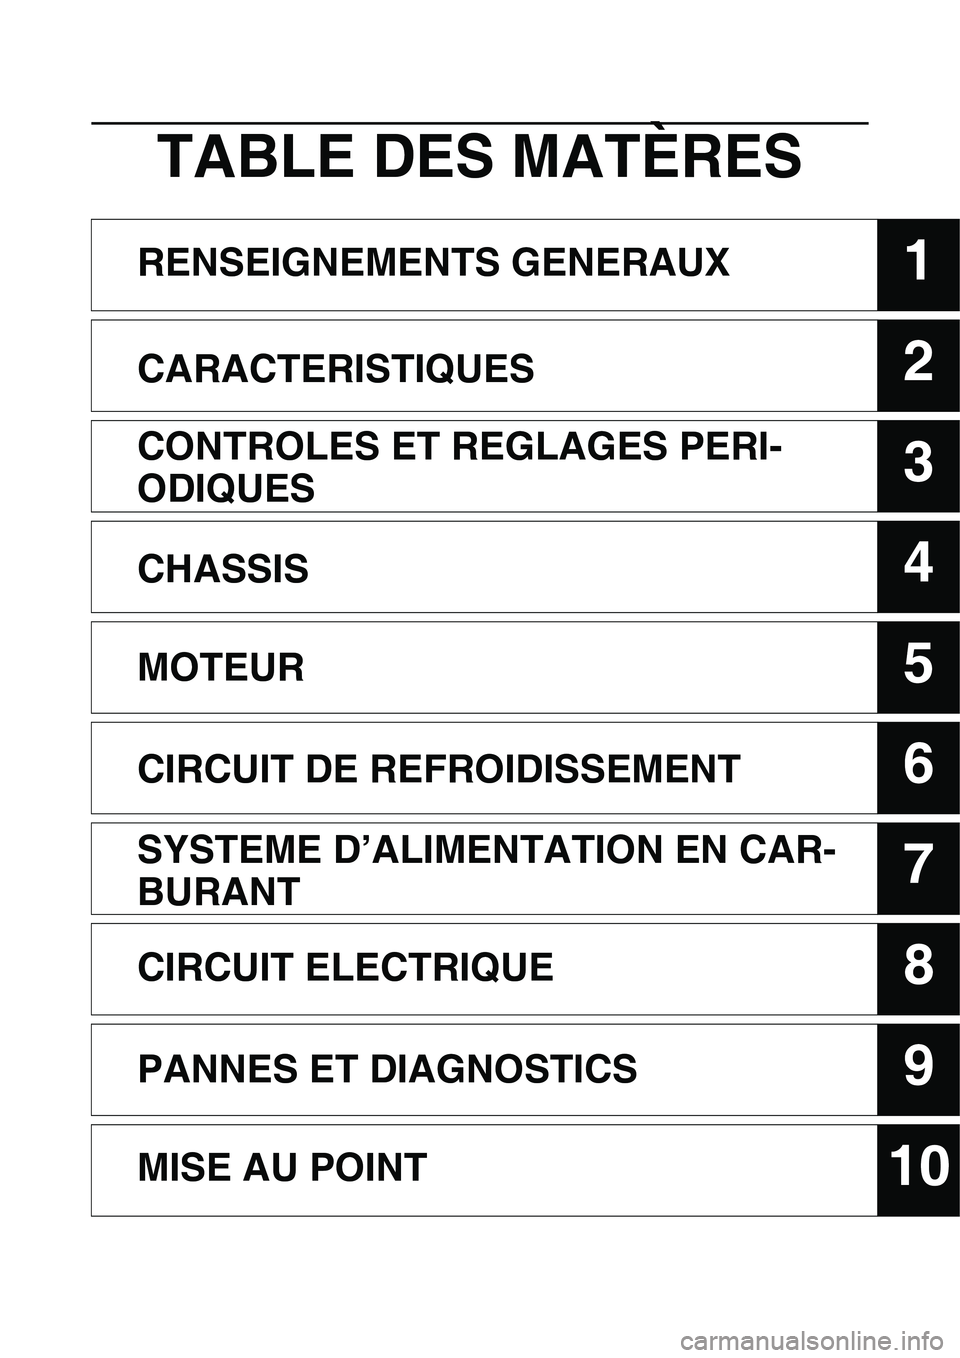 YAMAHA YZ450F 2014  Notices Demploi (in French) 1
2
3
4
5
6
7
8
9
10
TABLE DES MATÈRES
RENSEIGNEMENTS GENERAUX
CARACTERISTIQUES
CONTROLES ET REGLAGES PERI-
ODIQUES
CHASSIS
MOTEUR
CIRCUIT DE REFROIDISSEMENT
SYSTEME D’ALIMENTATION EN CAR-
BURANT
C